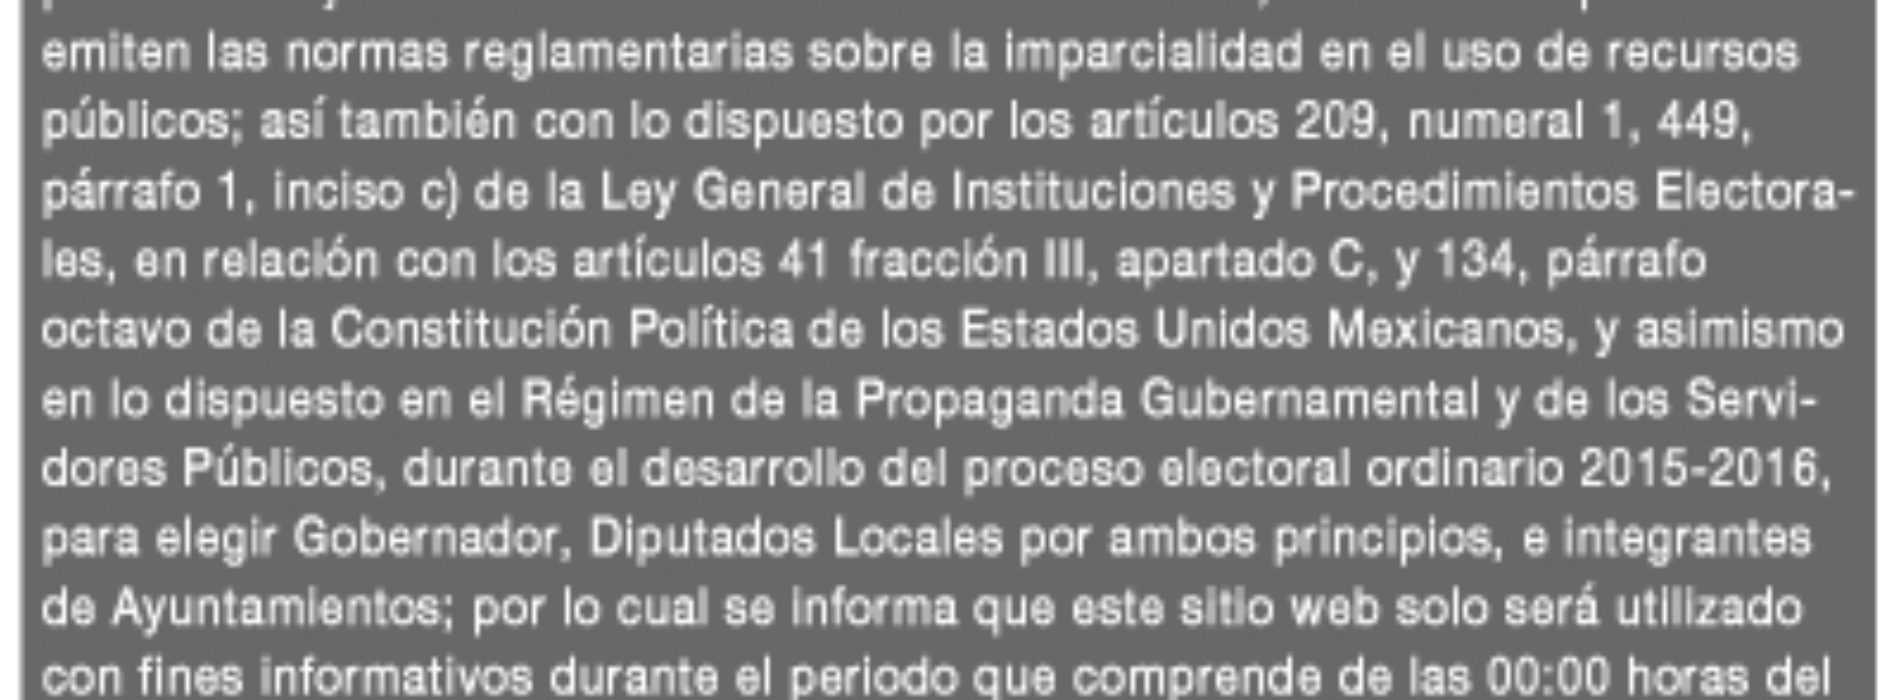 Gobierno de Oaxaca reconoce imparcialidad y probidad del Congreso del Estado